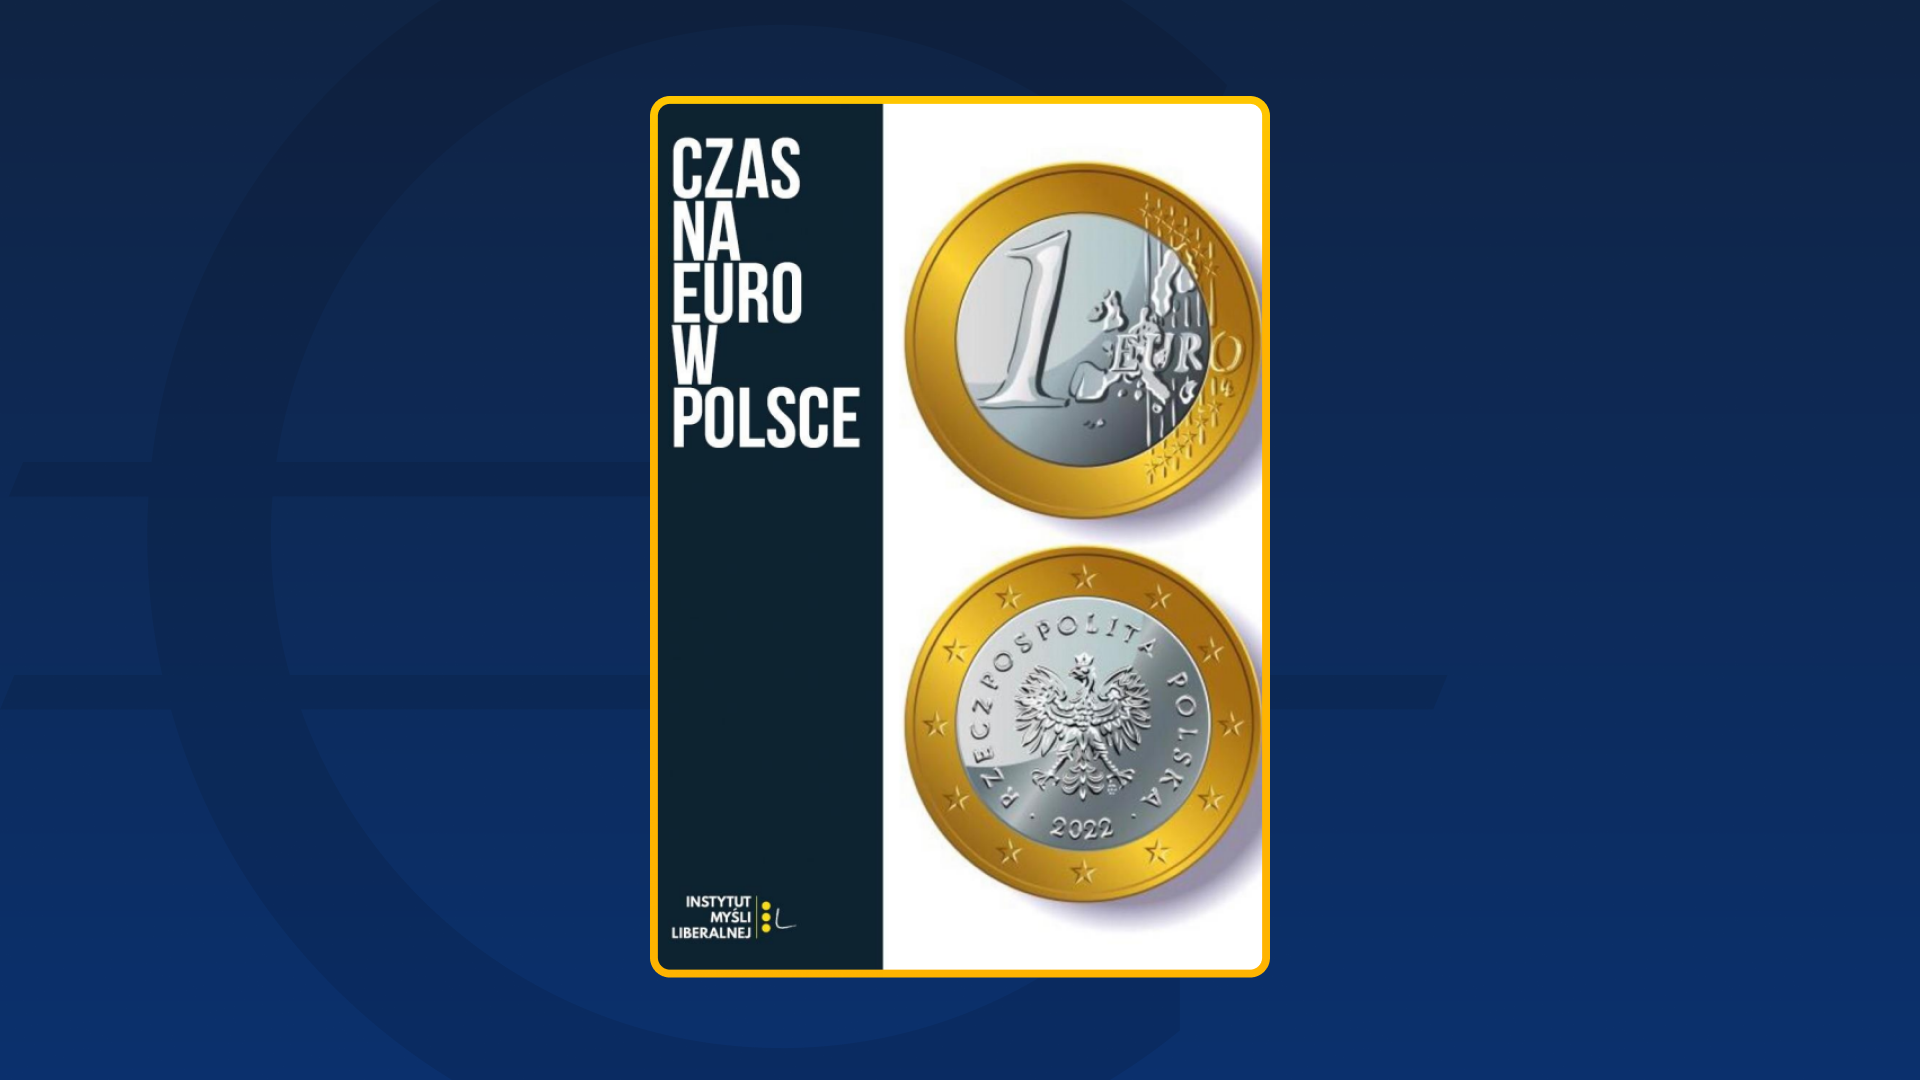 Czas na euro w Polsce (2022)